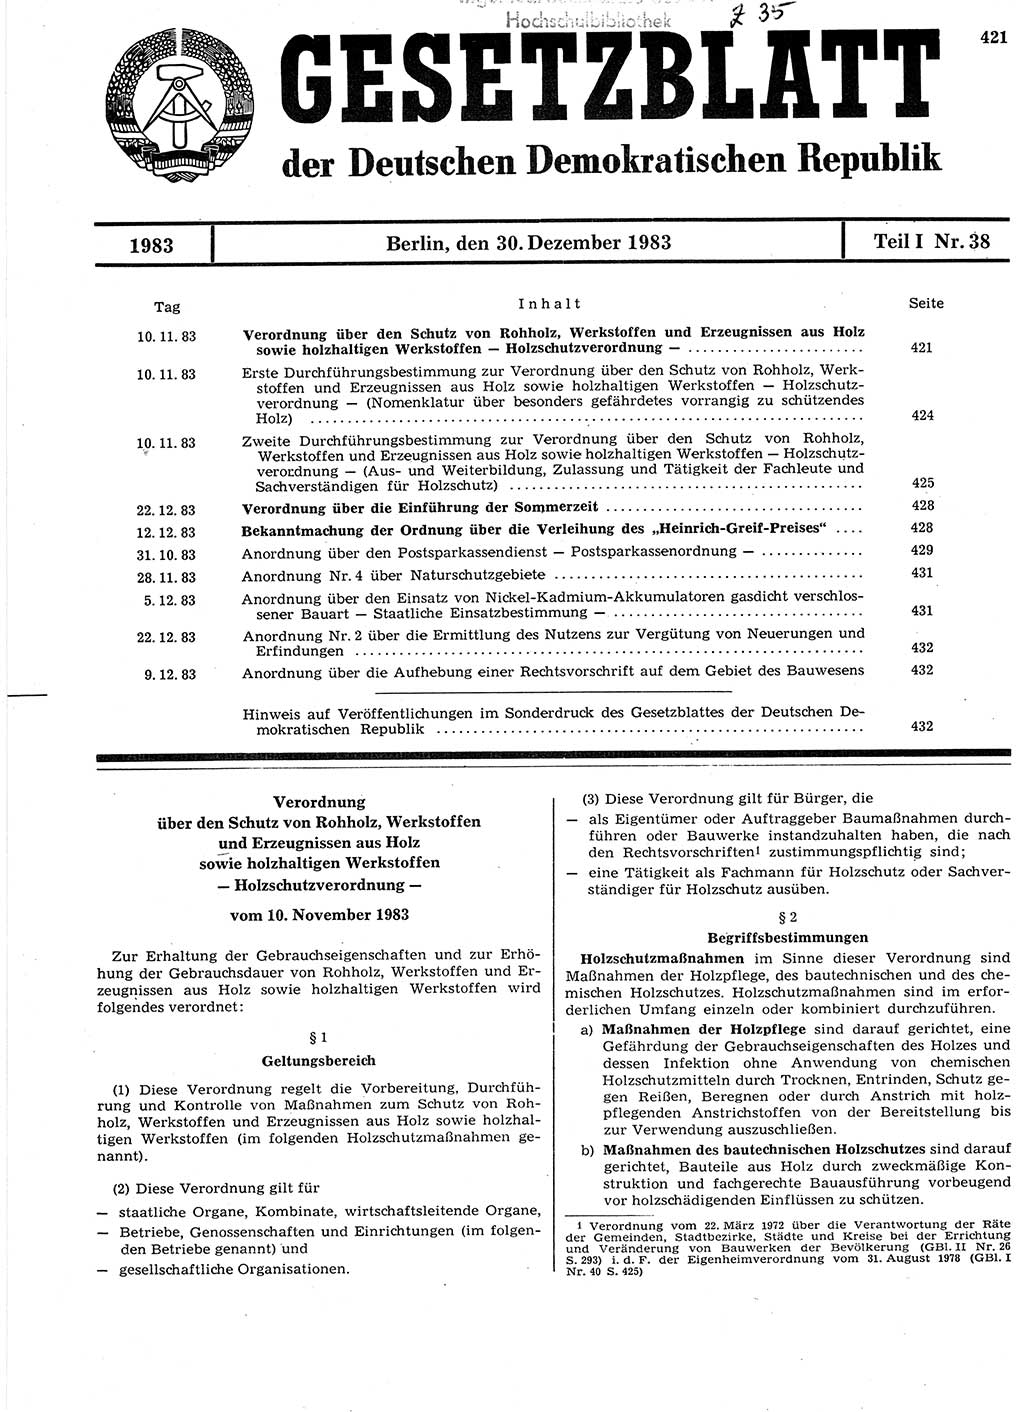 Gesetzblatt (GBl.) der Deutschen Demokratischen Republik (DDR) Teil Ⅰ 1983, Seite 421 (GBl. DDR Ⅰ 1983, S. 421)